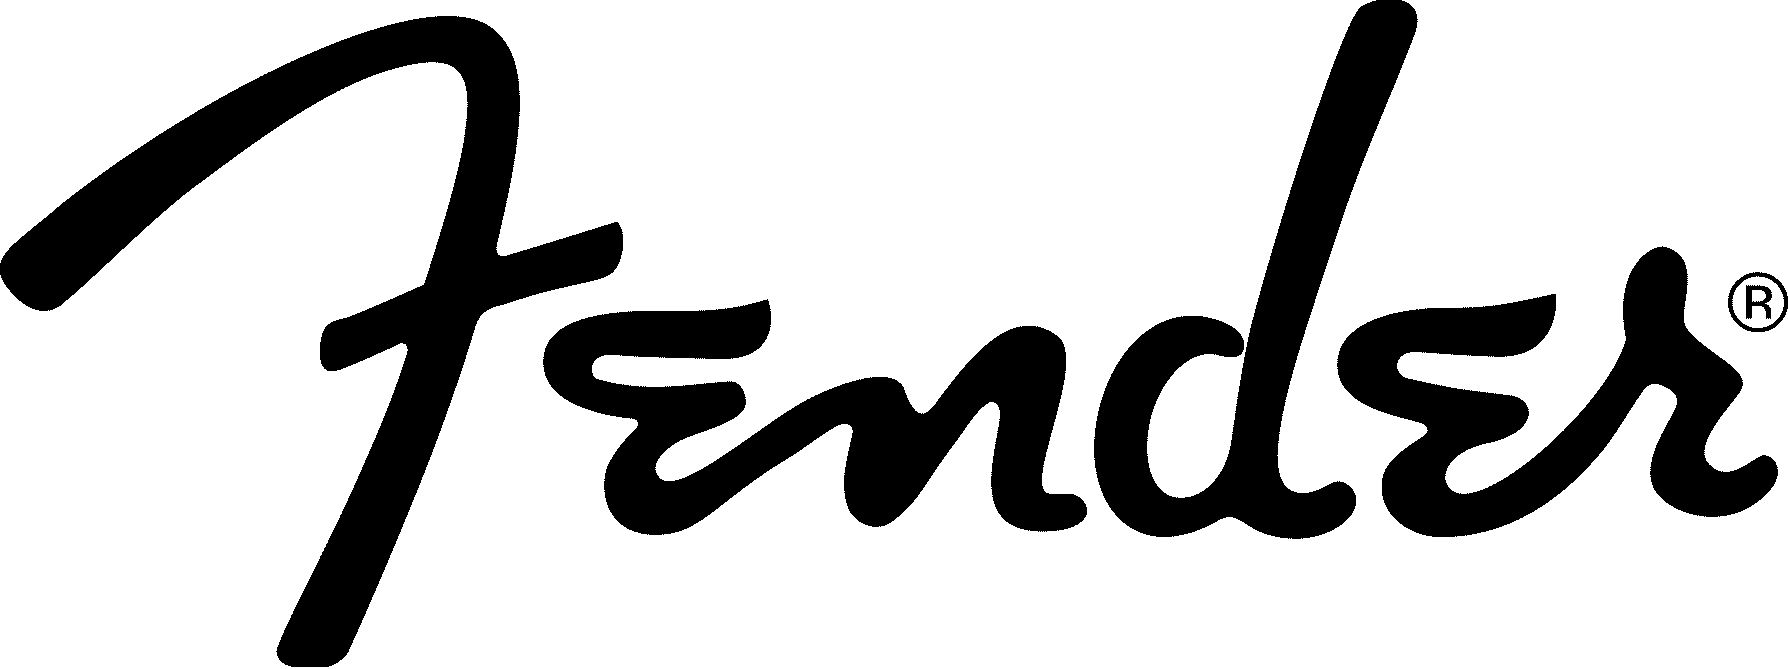 Fender-Logo black